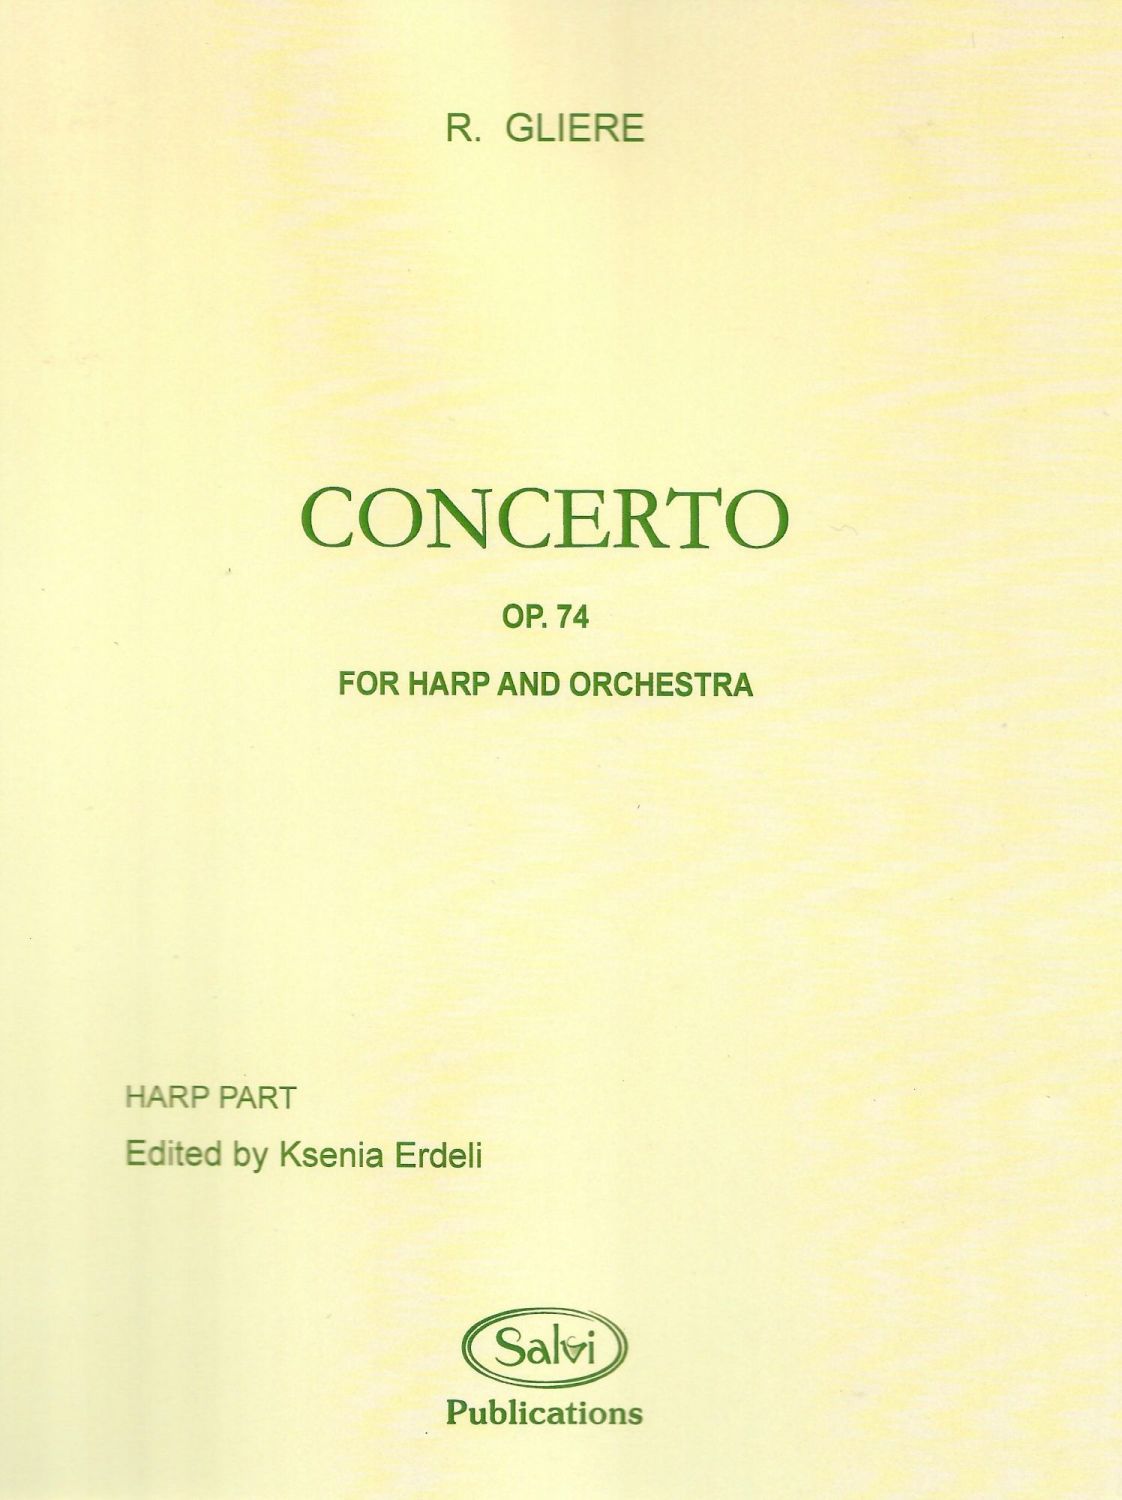 Concerto - R. Gliere